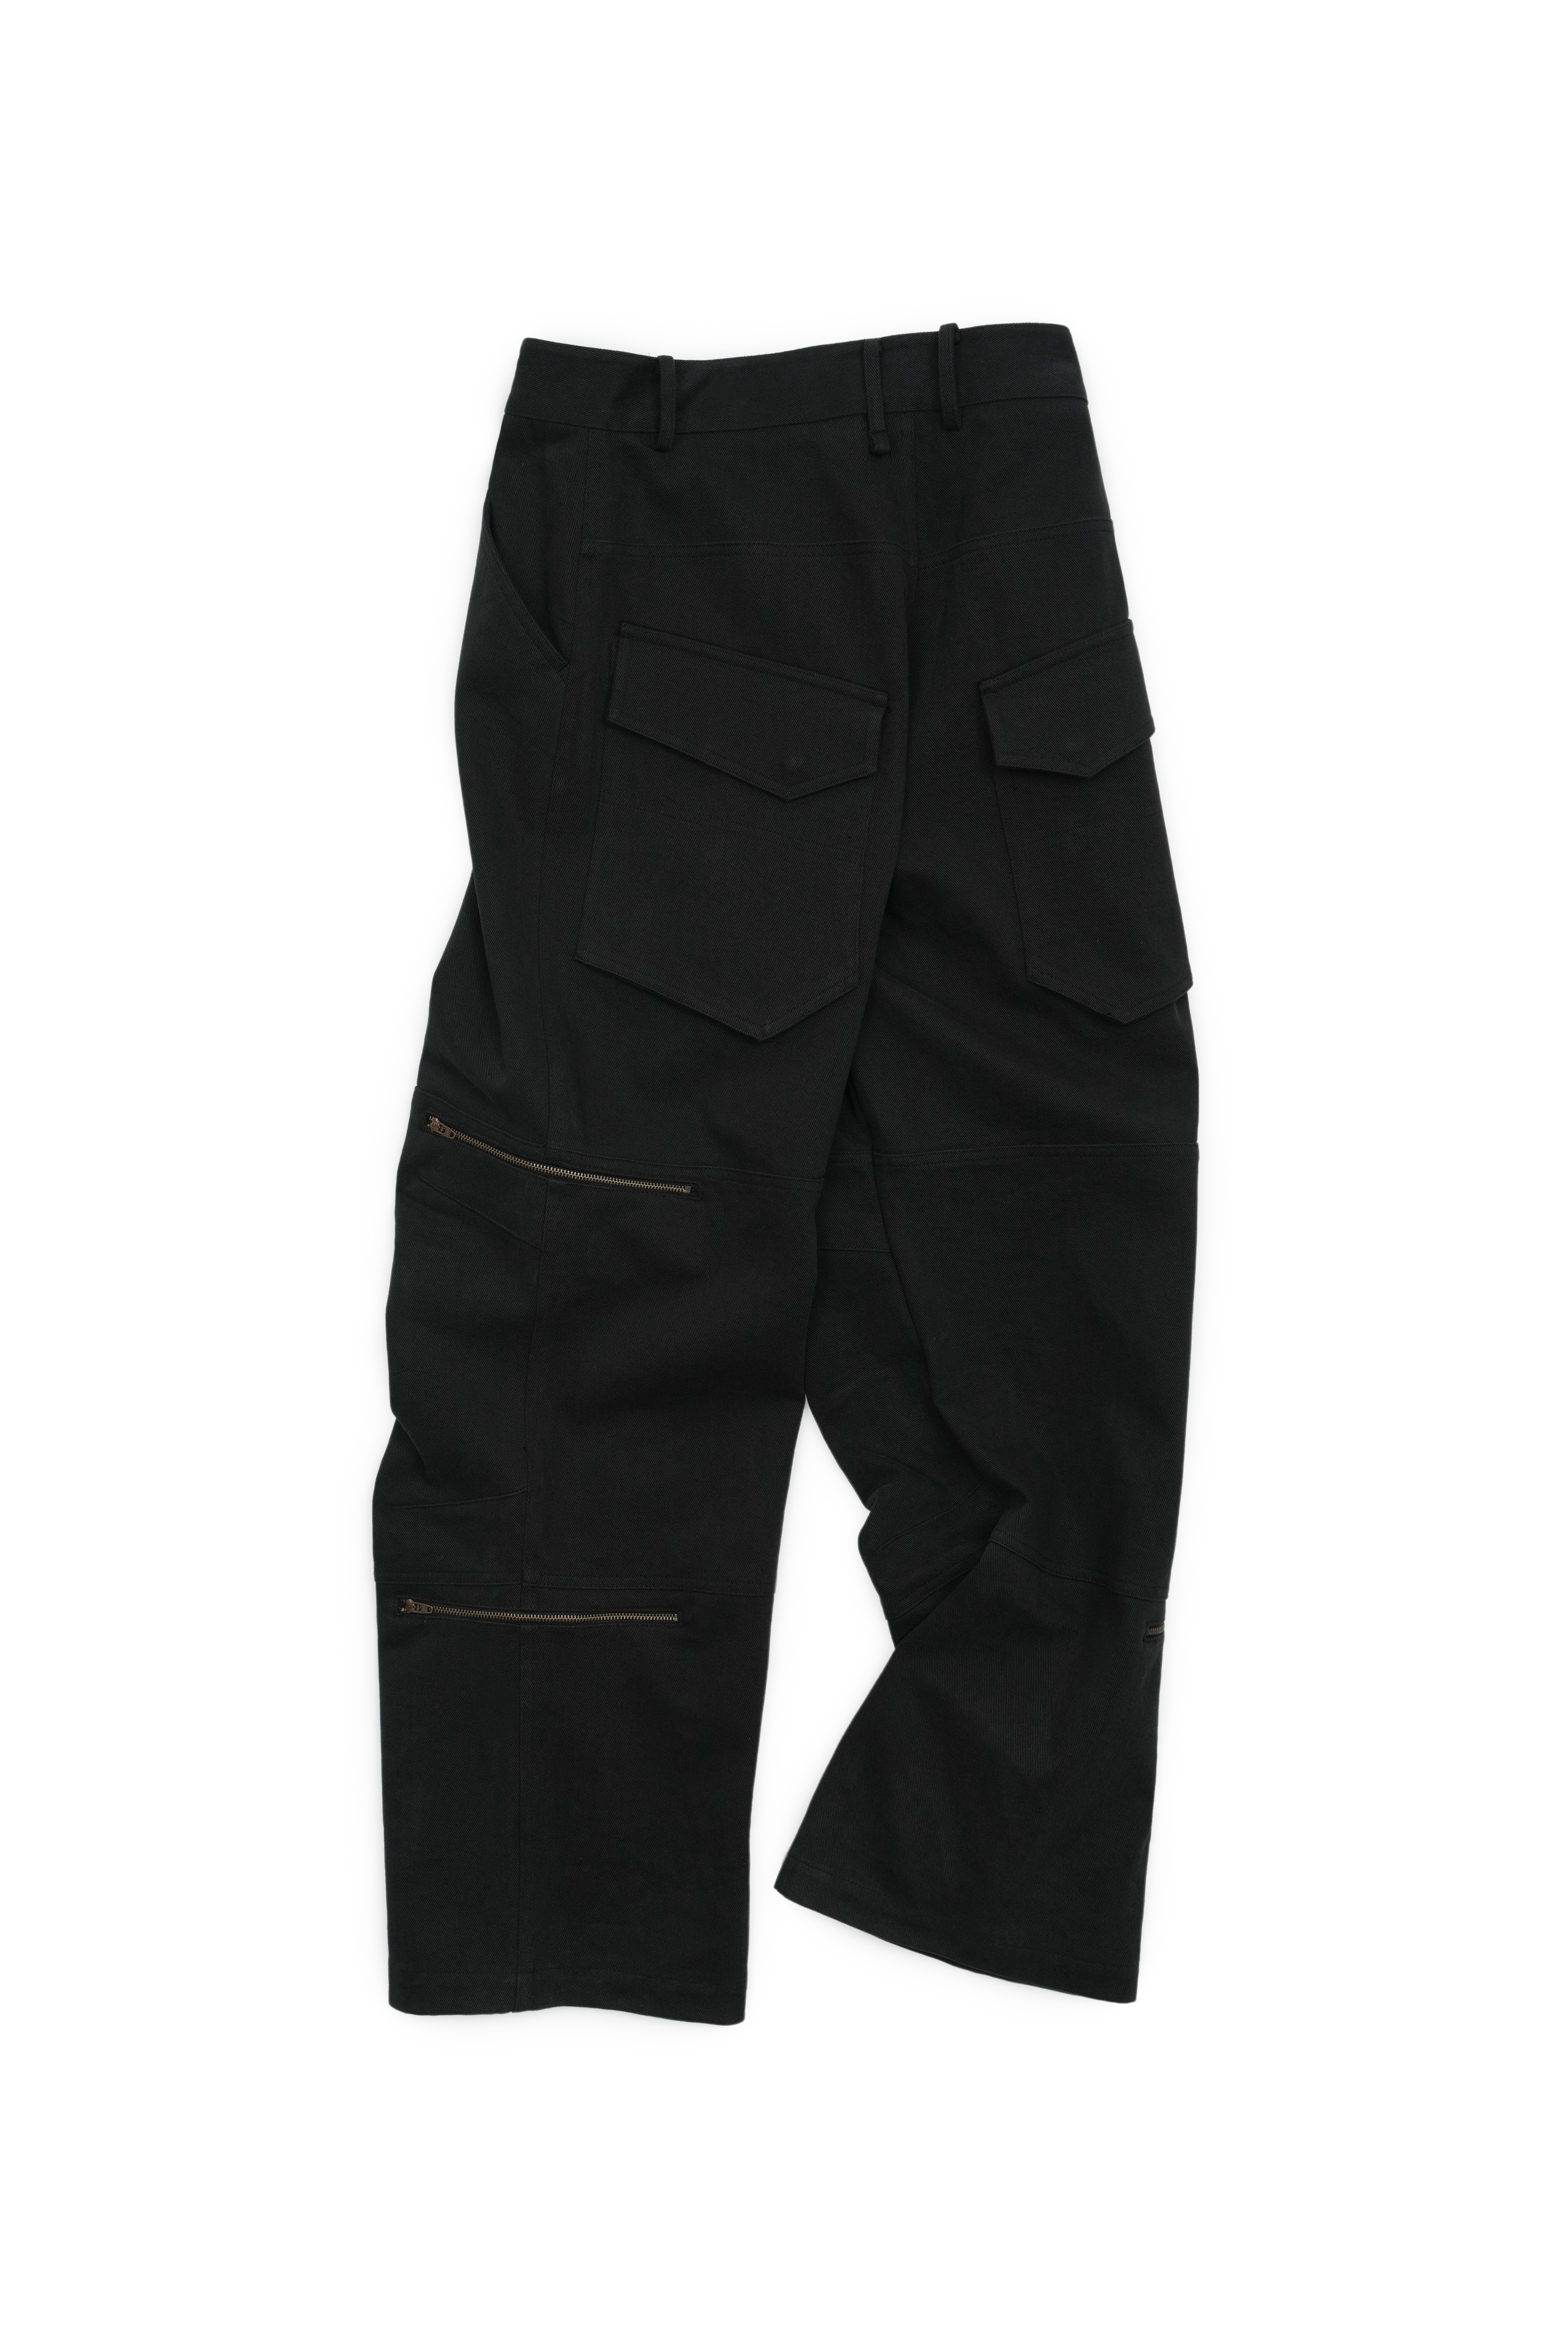 Labor Zipper Pants _ Fade Black